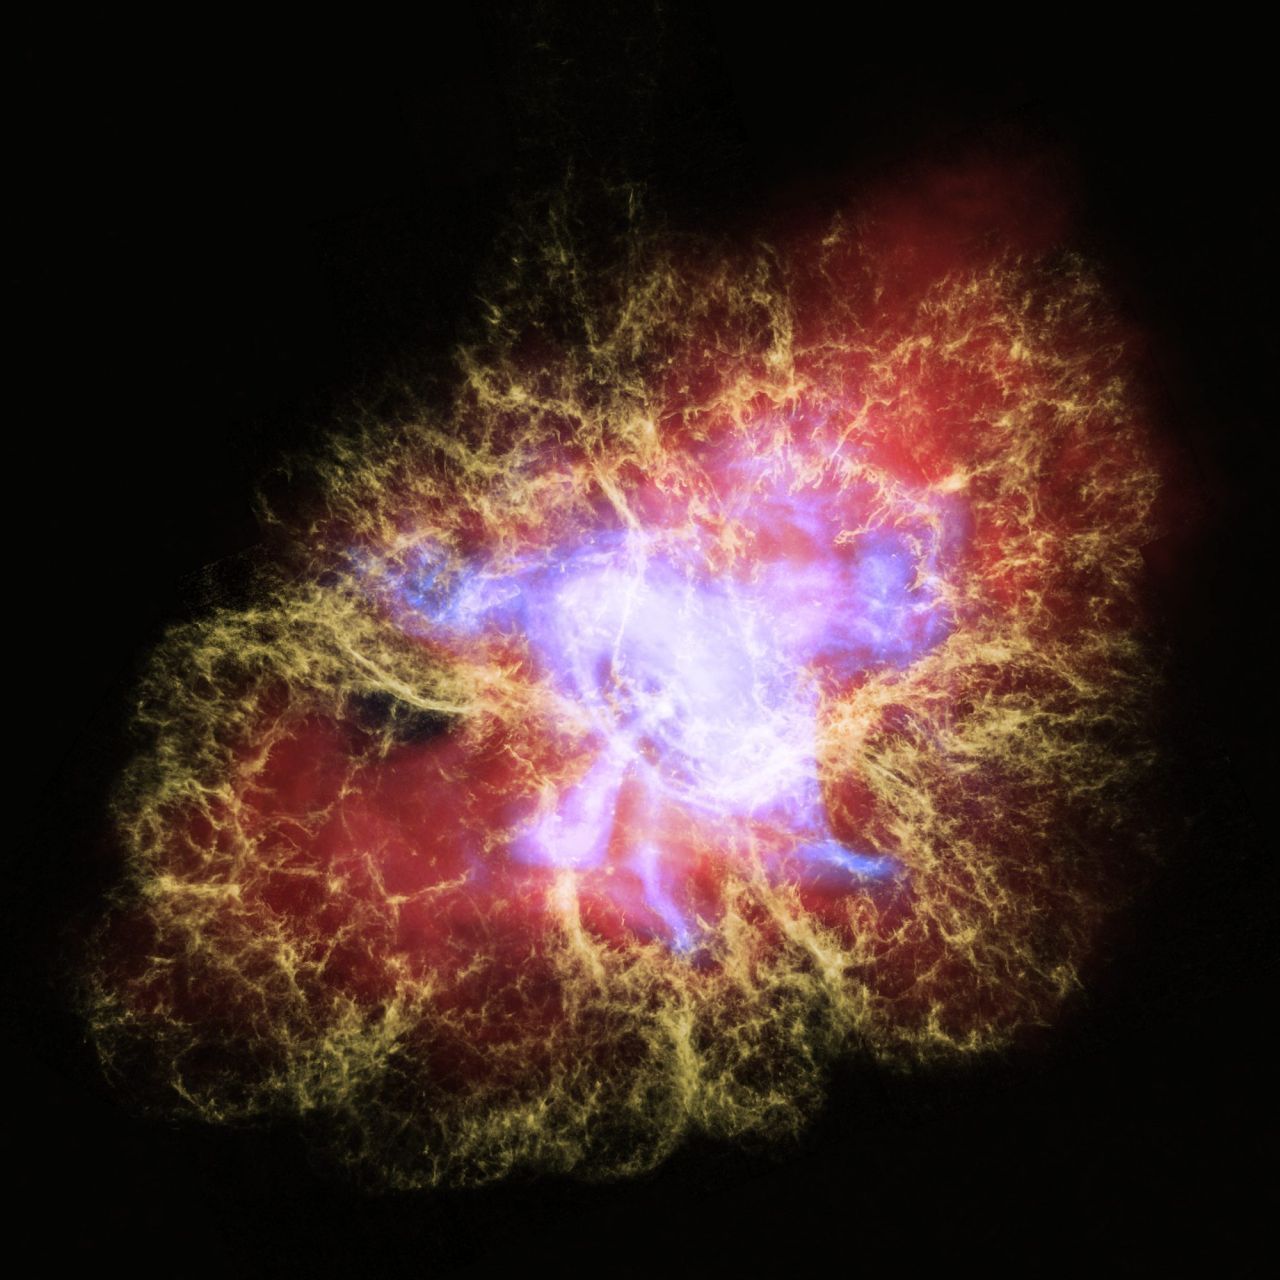 Mit viel Fantasie kann man vielleicht erkennen, warum diese Formation die "Crab Nebula" genannt wird. Das Foto ist in einer Zusammenarbeit zwischen einem Teleskop auf der Erde und Hubble entstanden und zeigt einen Neutronen-Stern. Diese Sterne haben eine ganz besonders hohe Dichte. Ein Teelöffel der Materie dürfte mehrere Milliarden Tonnen wiegen. Unvorstellbar.